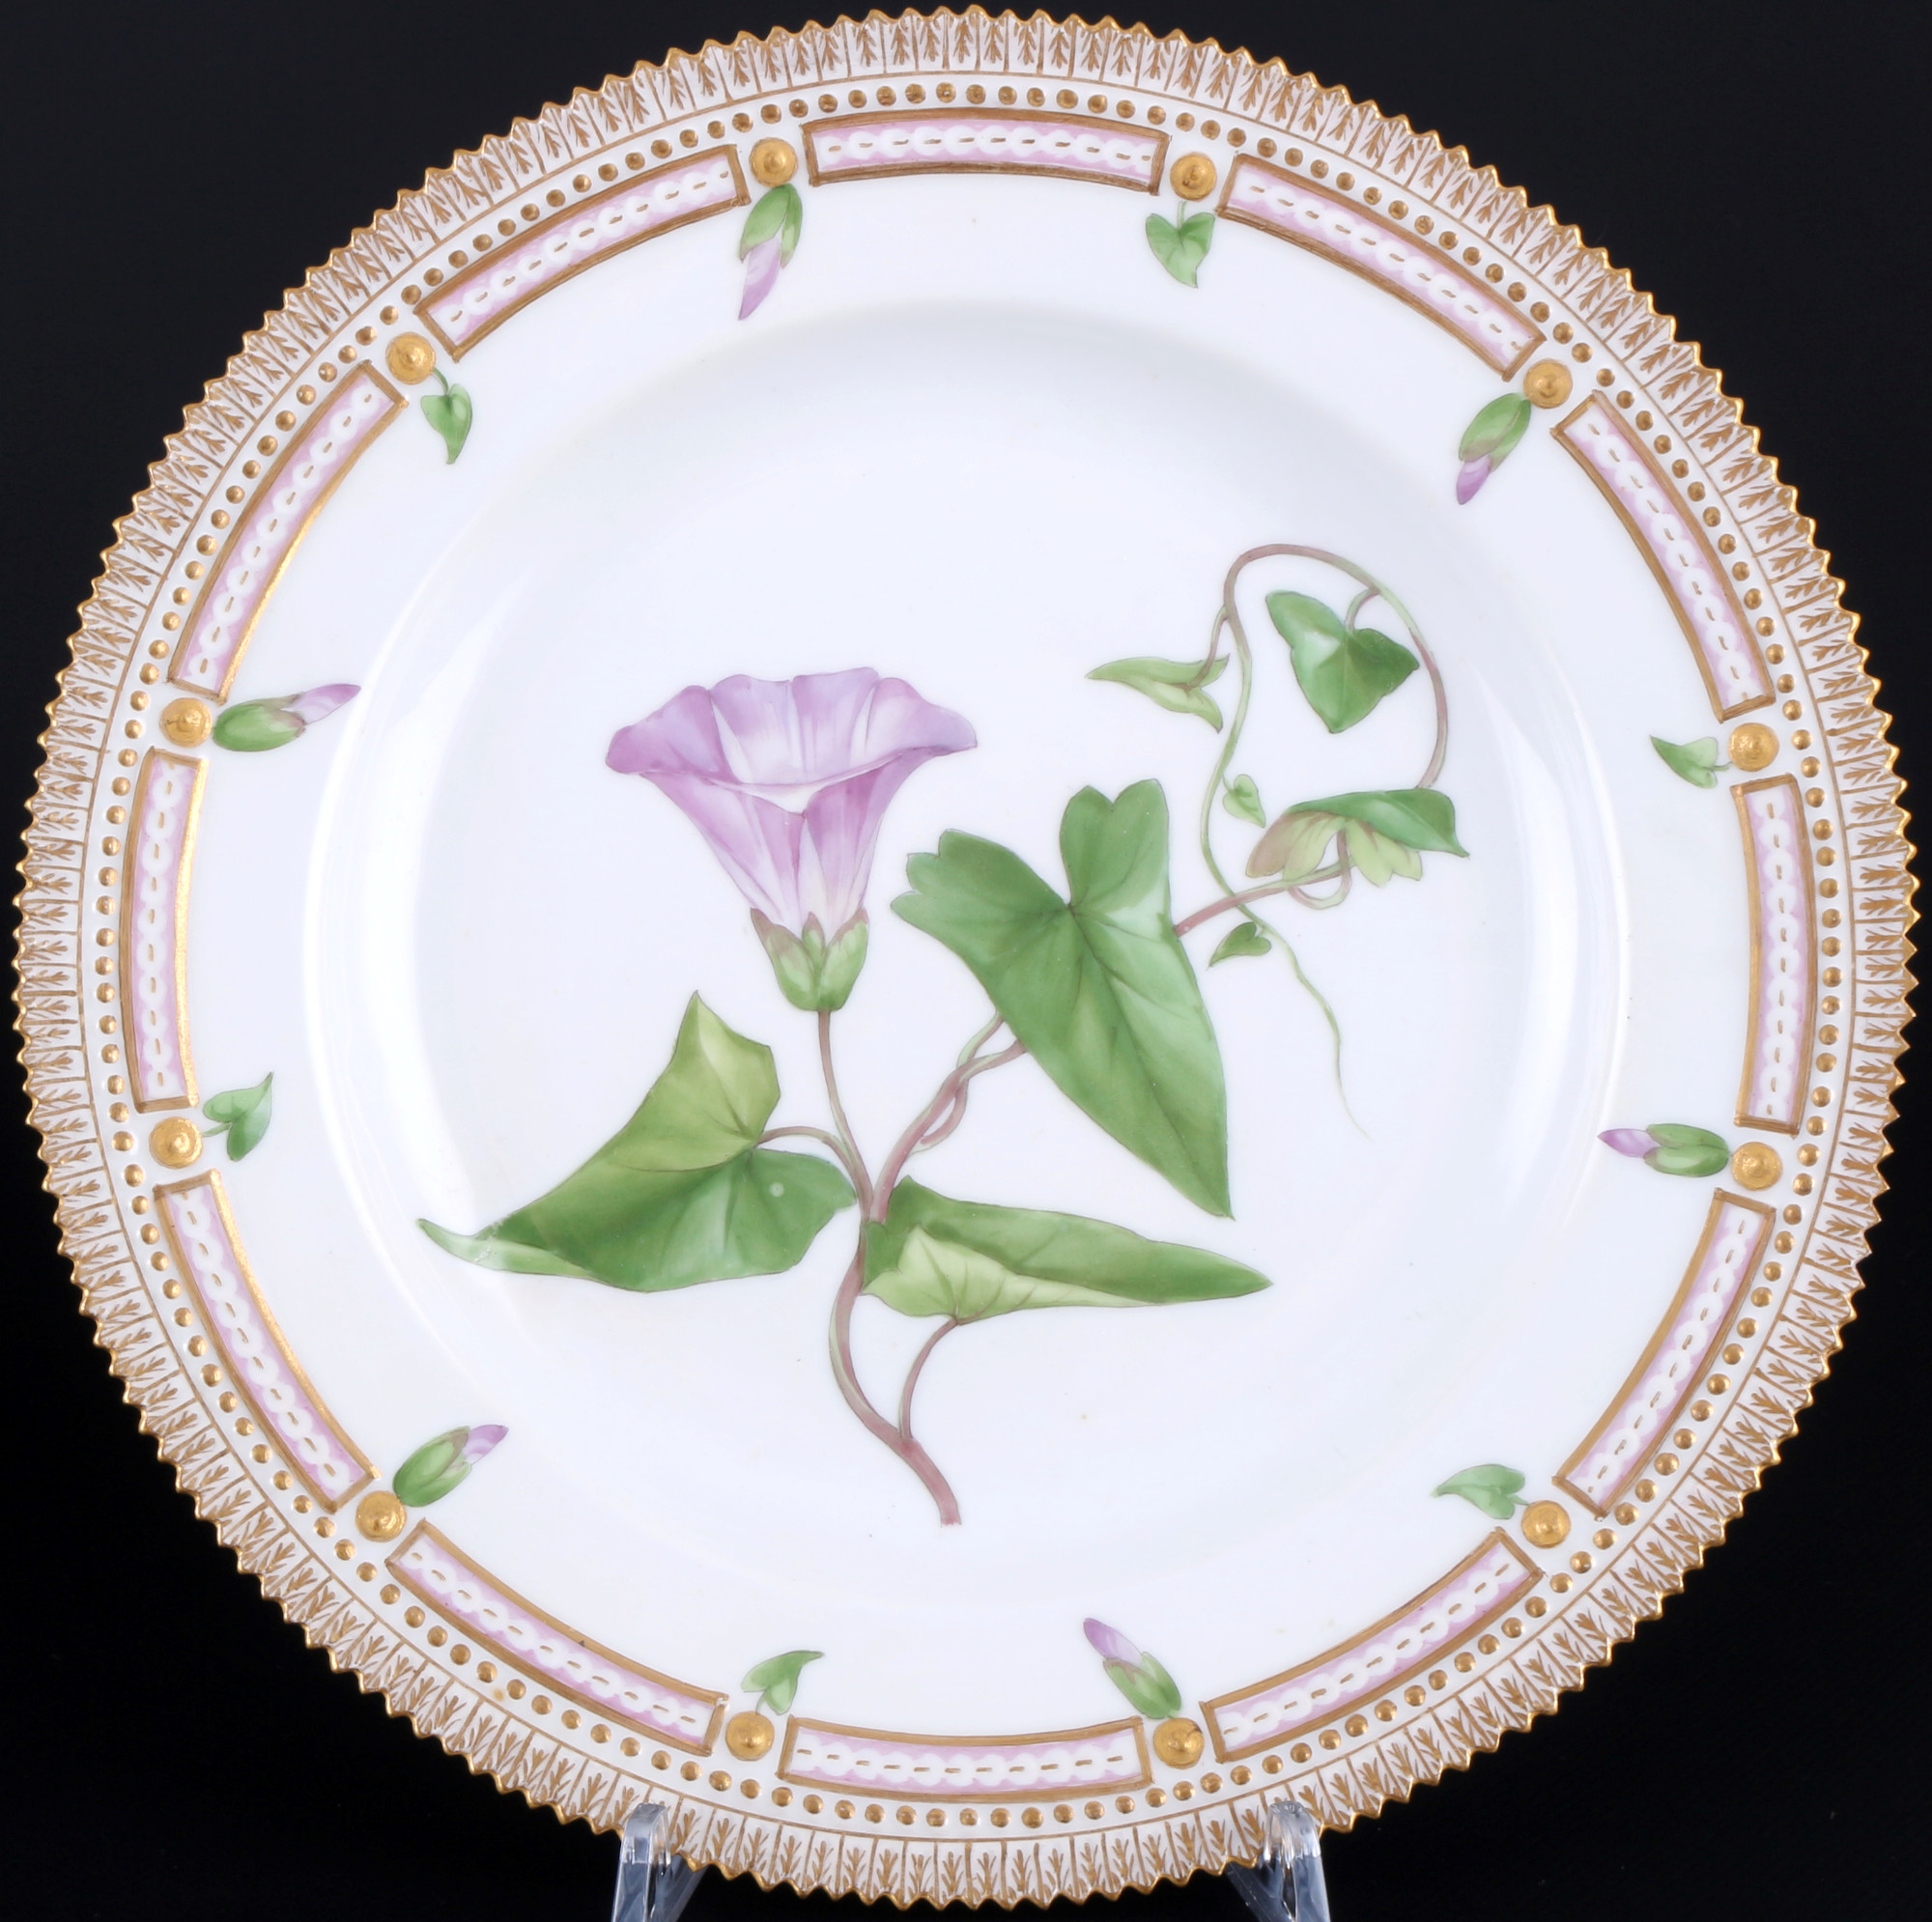 Royal Copenhagen Flora Danica 2 dinner plates 3549 1st choice, Speiseteller, - Image 3 of 9